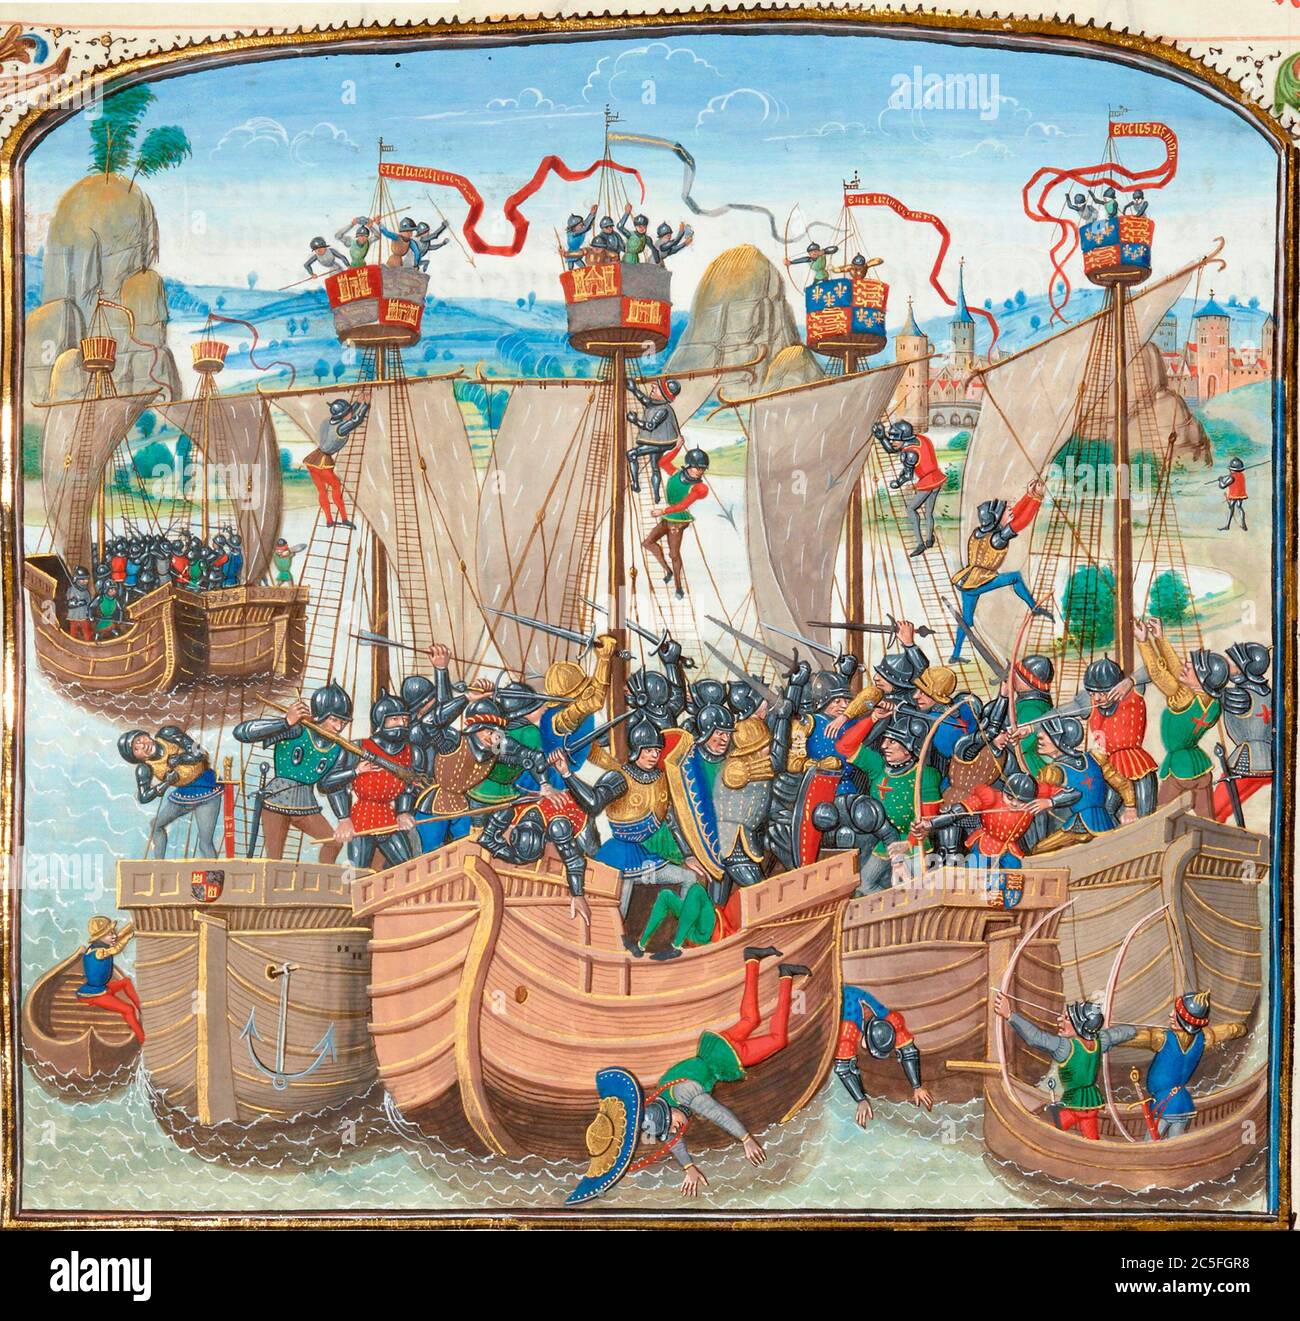 La battaglia navale di la Rochelle, Parte della fase carolina della guerra dei cent'anni la battaglia di la Rochelle fu una battaglia navale combattuta il 22 e 23 giugno 1372[6] tra una flotta castigliana comandata dall'Almirante castigliano Ambrosio Boccanegra e un convoglio inglese comandato da John Hastings, II conte di Pembroke. Foto Stock